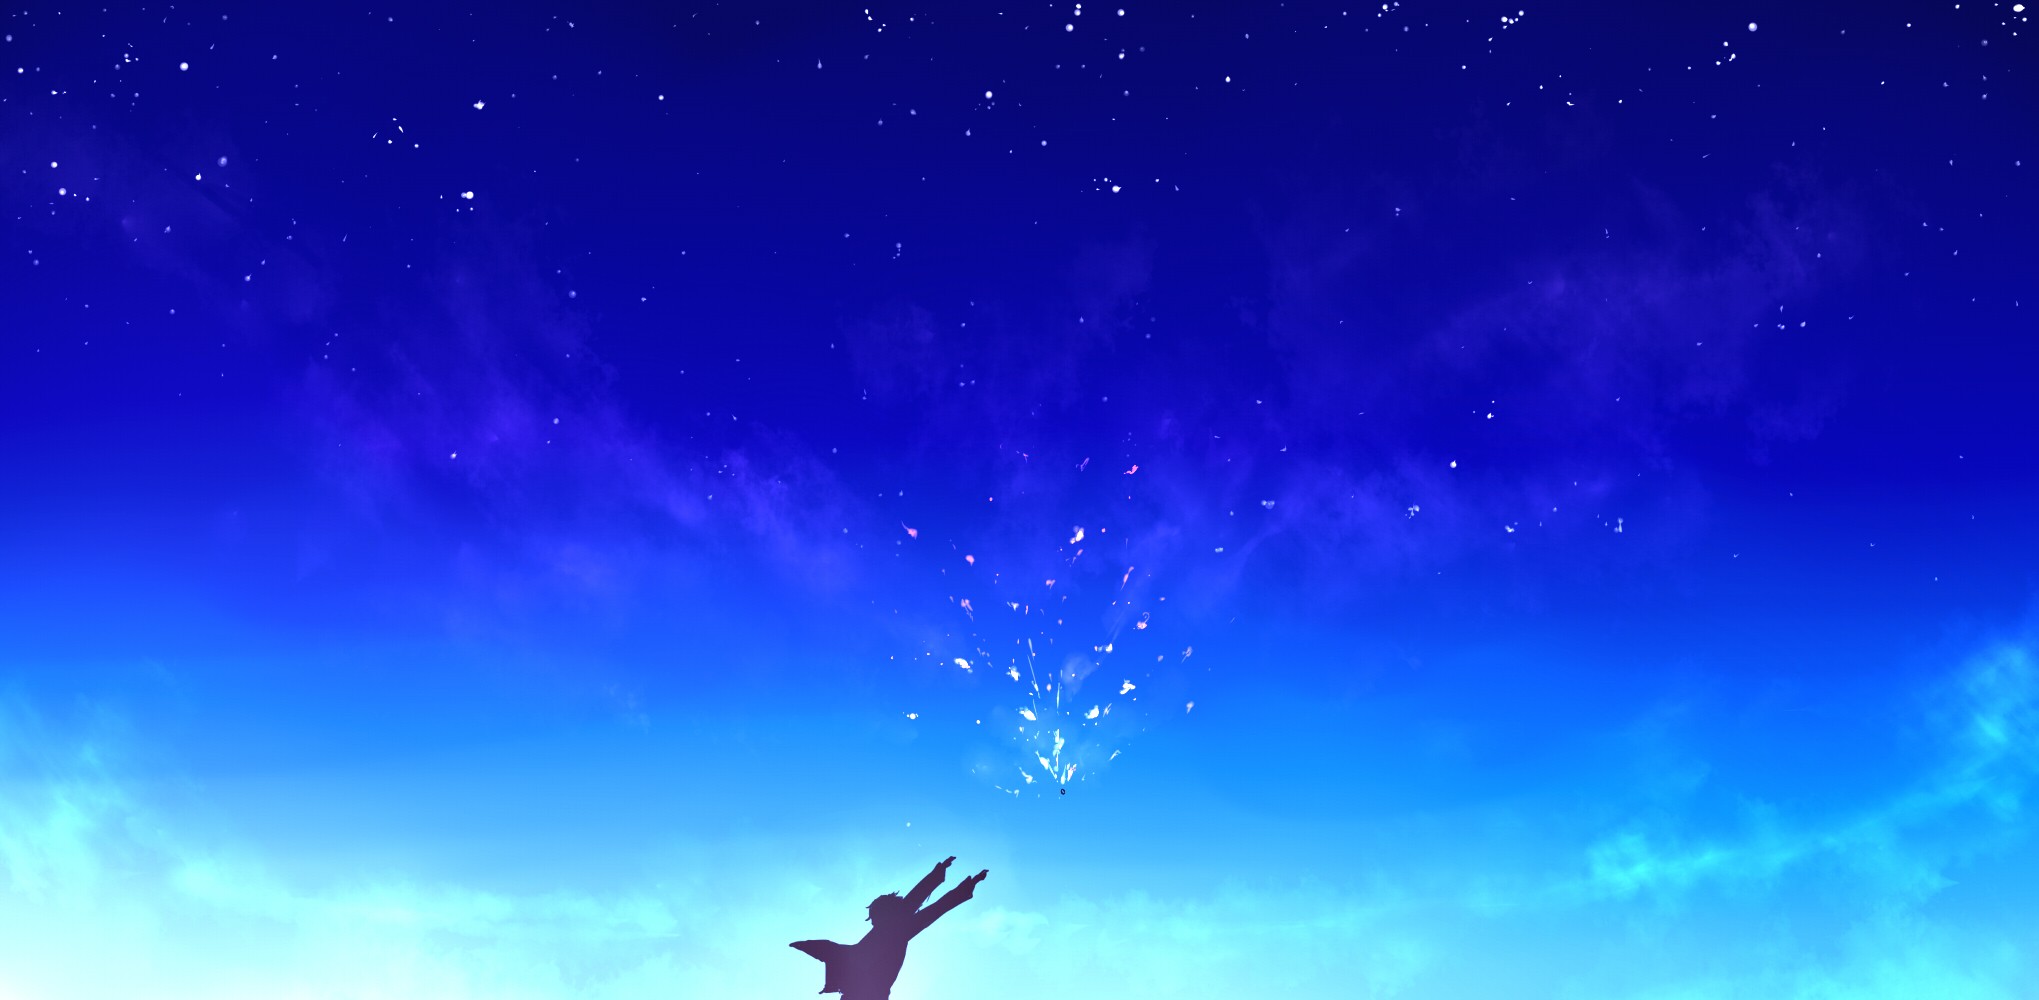 Anime 2039x1000 Kanbara Akihito Kyoukai no Kanata anime sky stars arms up